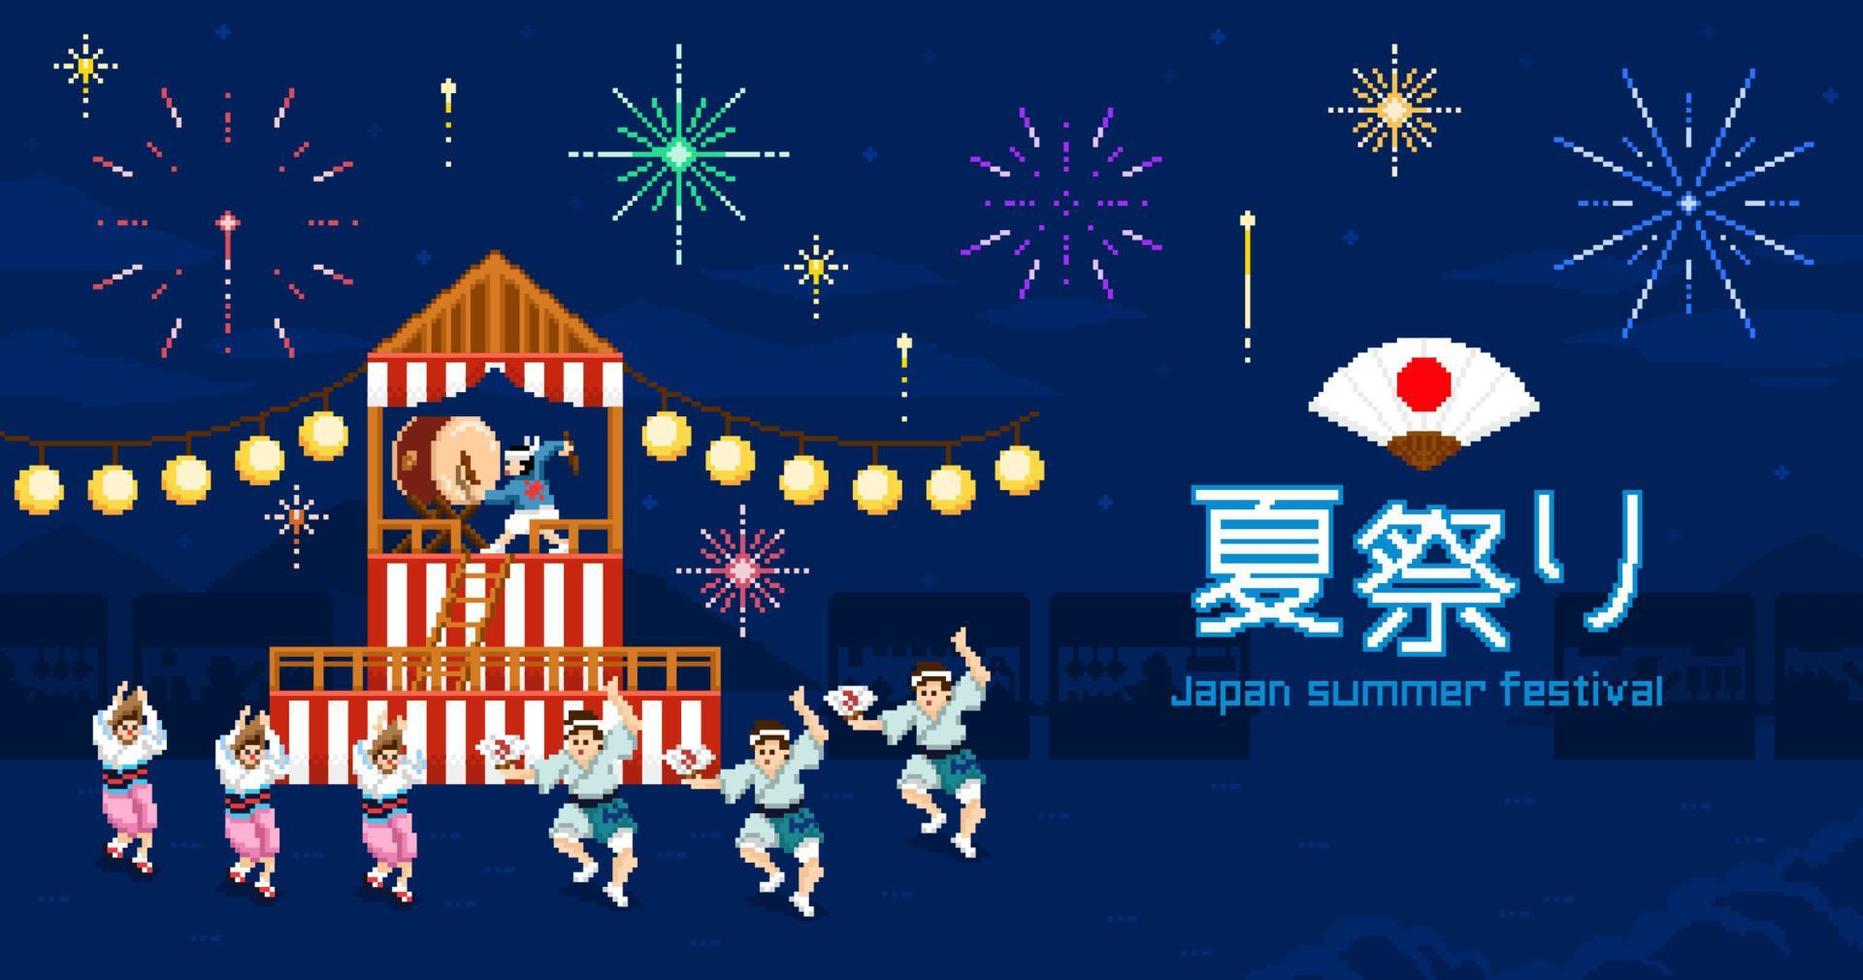 cartel del festival de verano de japón. ilustración de píxeles de personas que bailan bon odori cuando los fuegos artificiales se encienden en la noche del festival de verano sobre fondo azul oscuro. vector